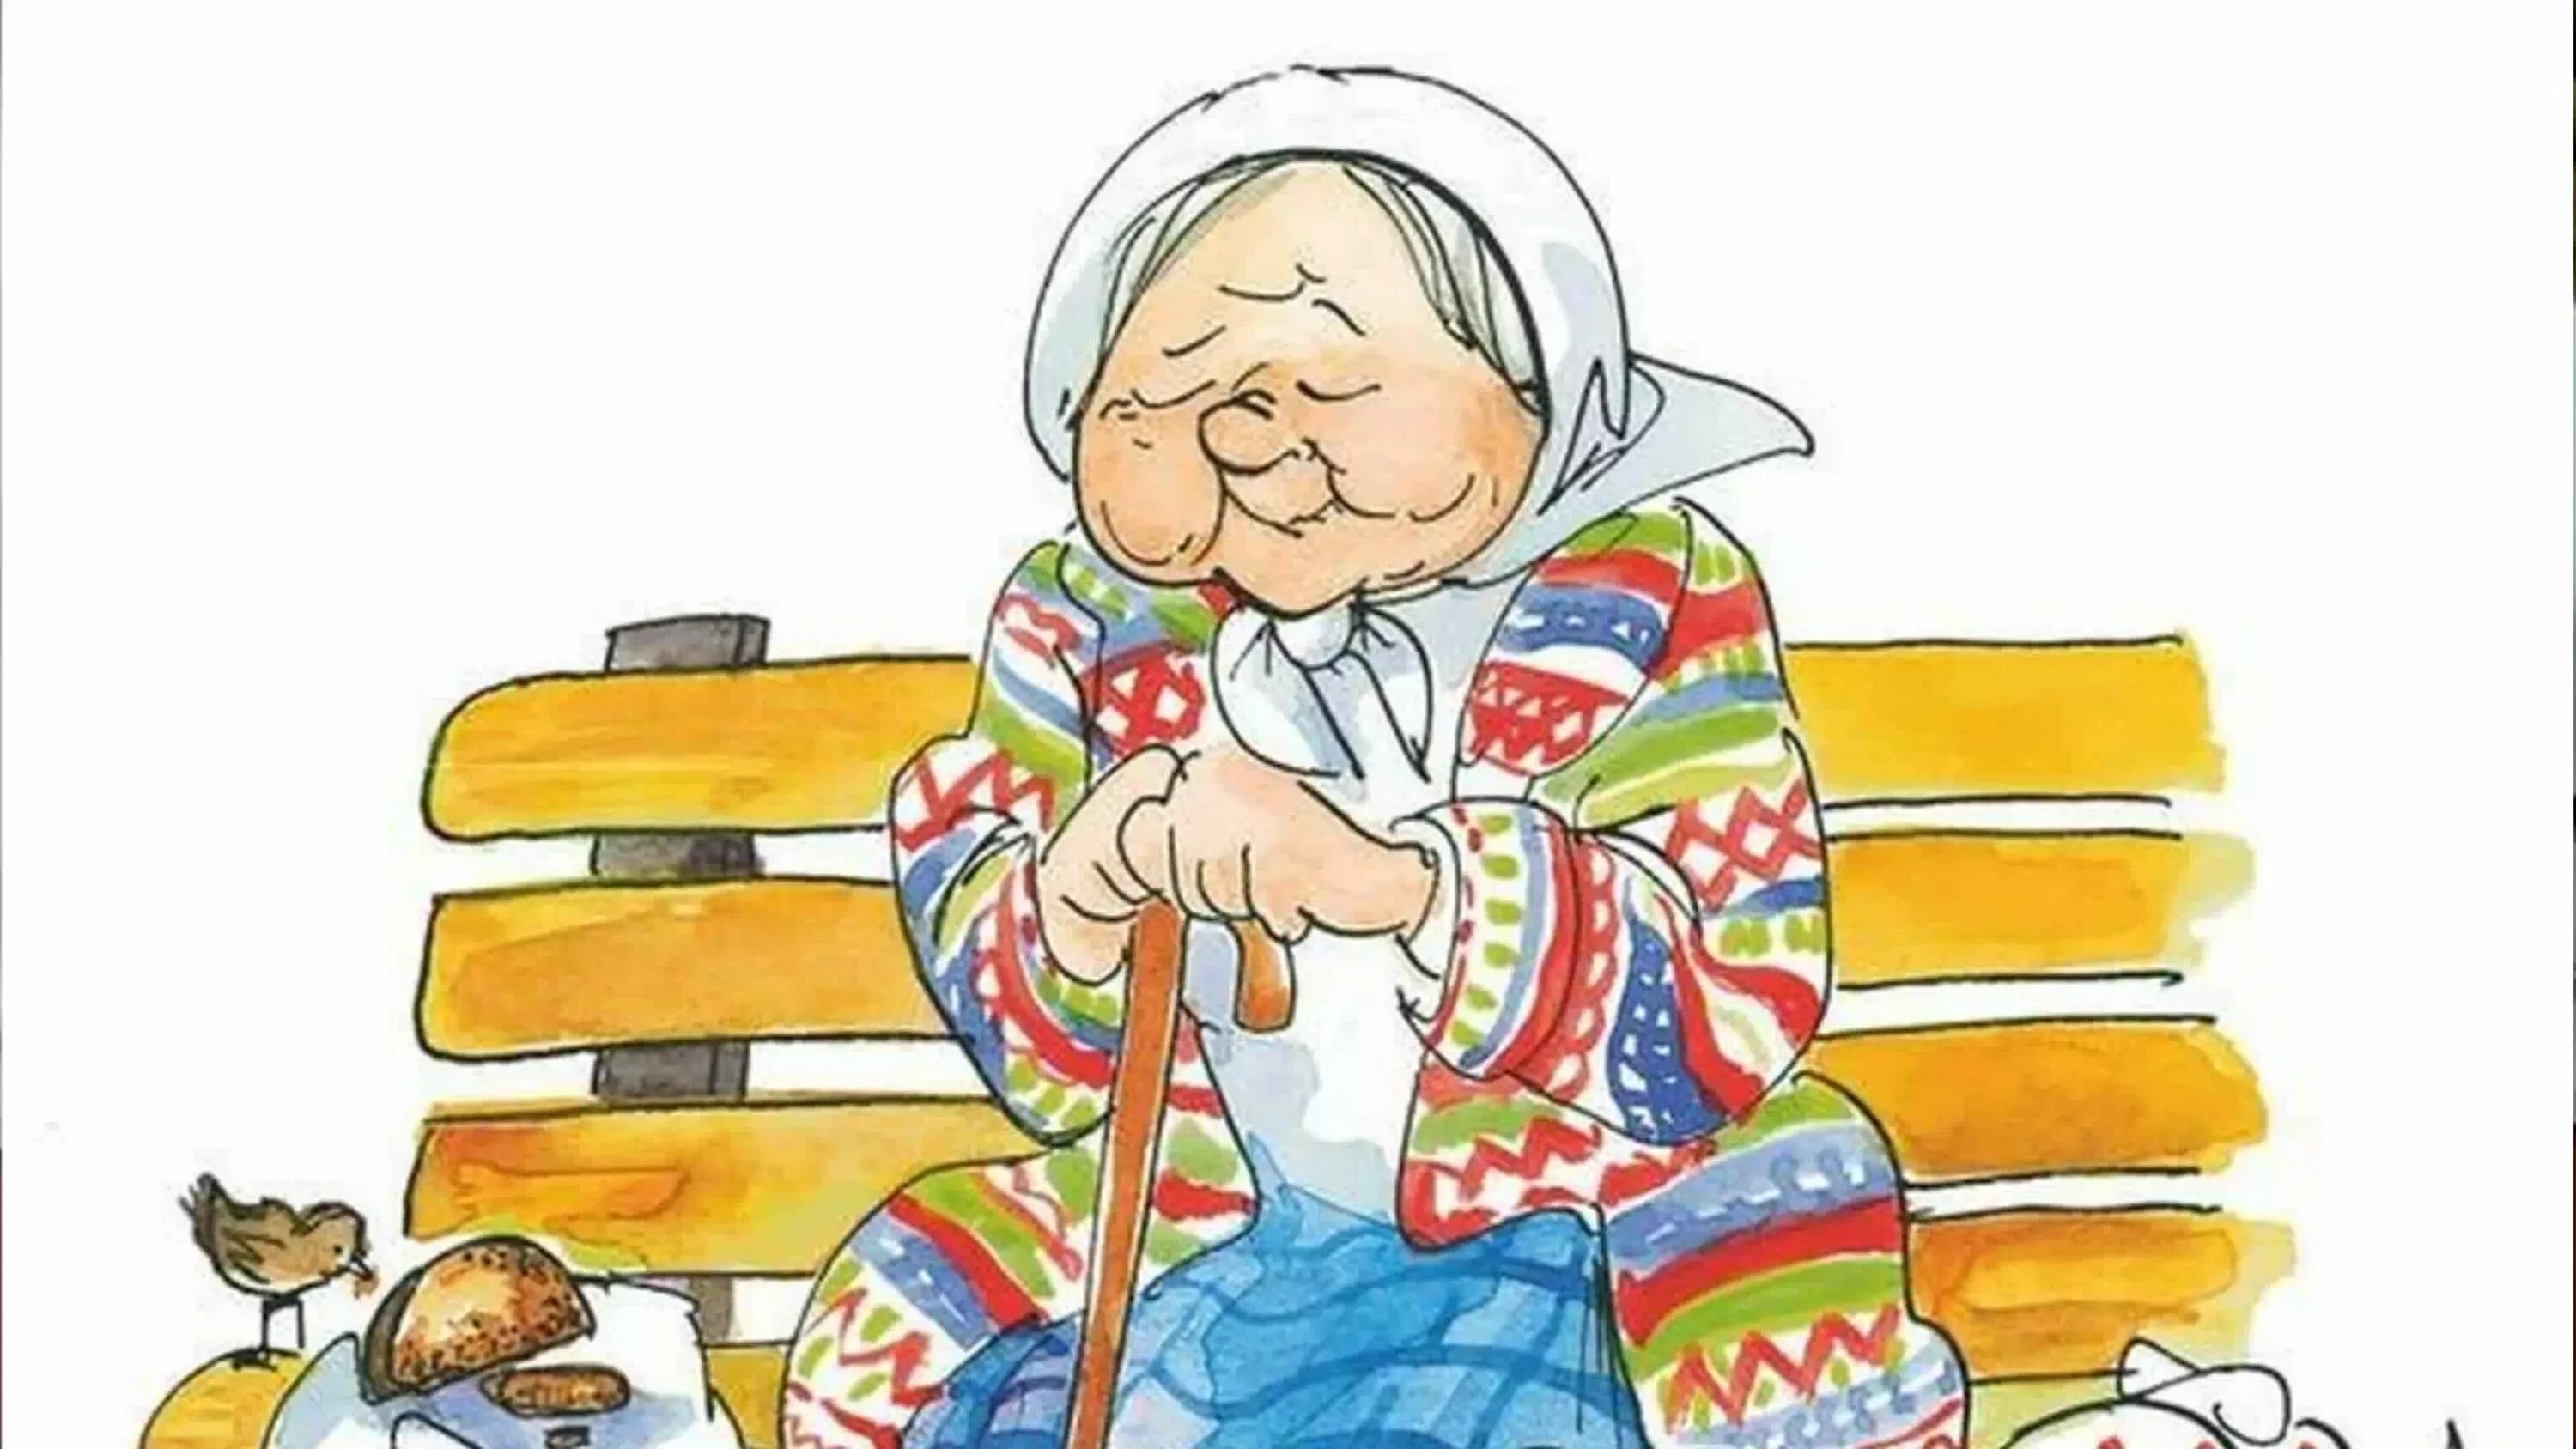 Бабушка оладушки. Бабушка с оладушками. Бабушка угощает пирогами. Напечет бабушка оладушки. Танечка угости бабушку своим пирогом